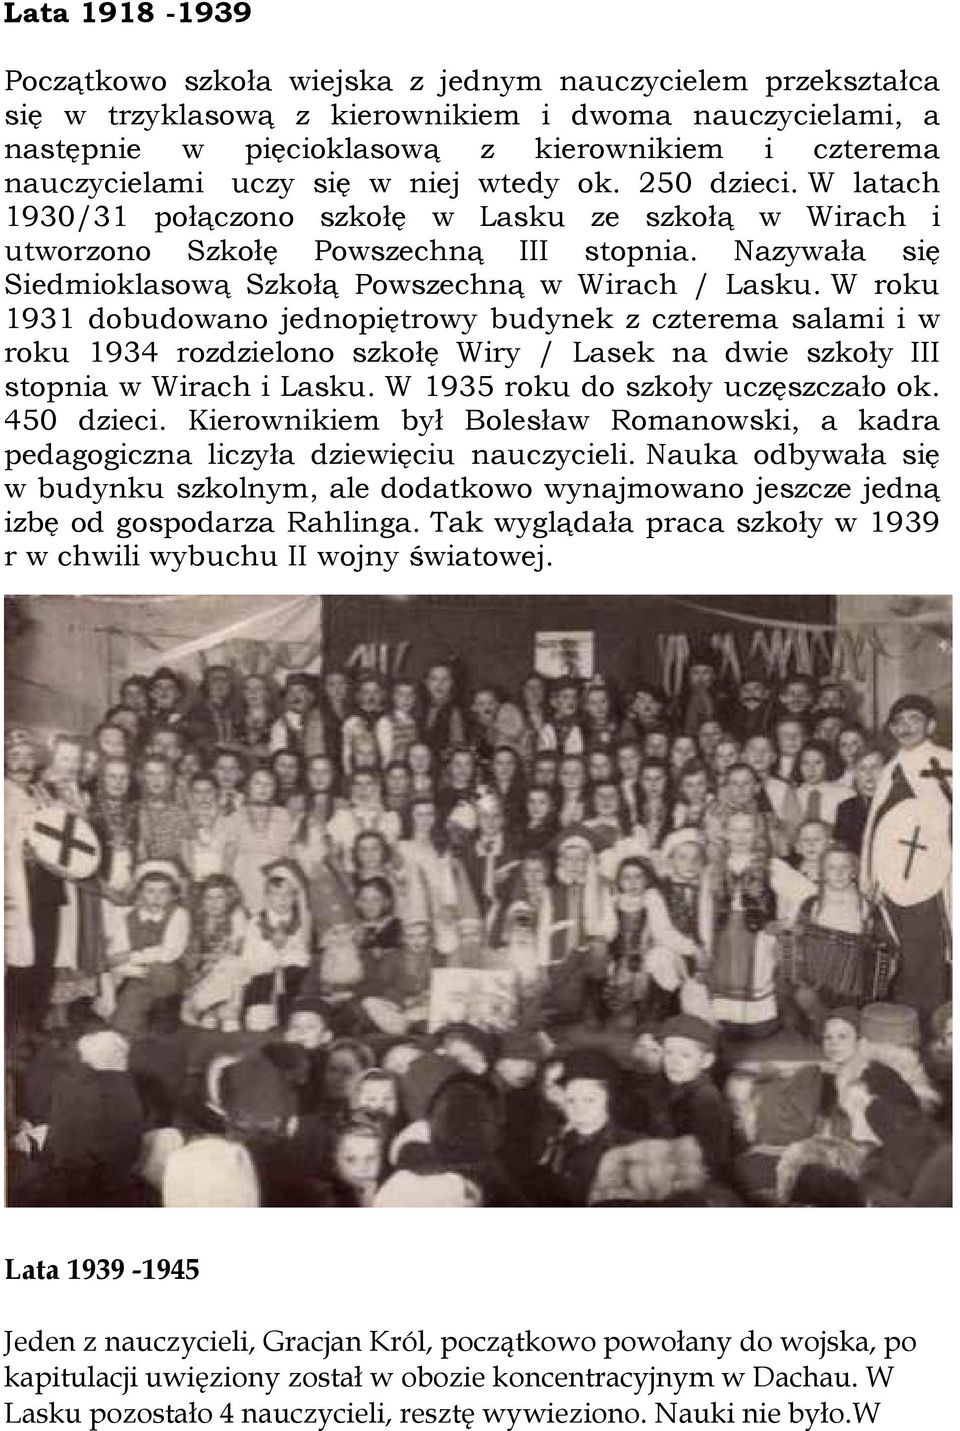 Nazywała się Siedmioklasową Szkołą Powszechną w Wirach / Lasku.